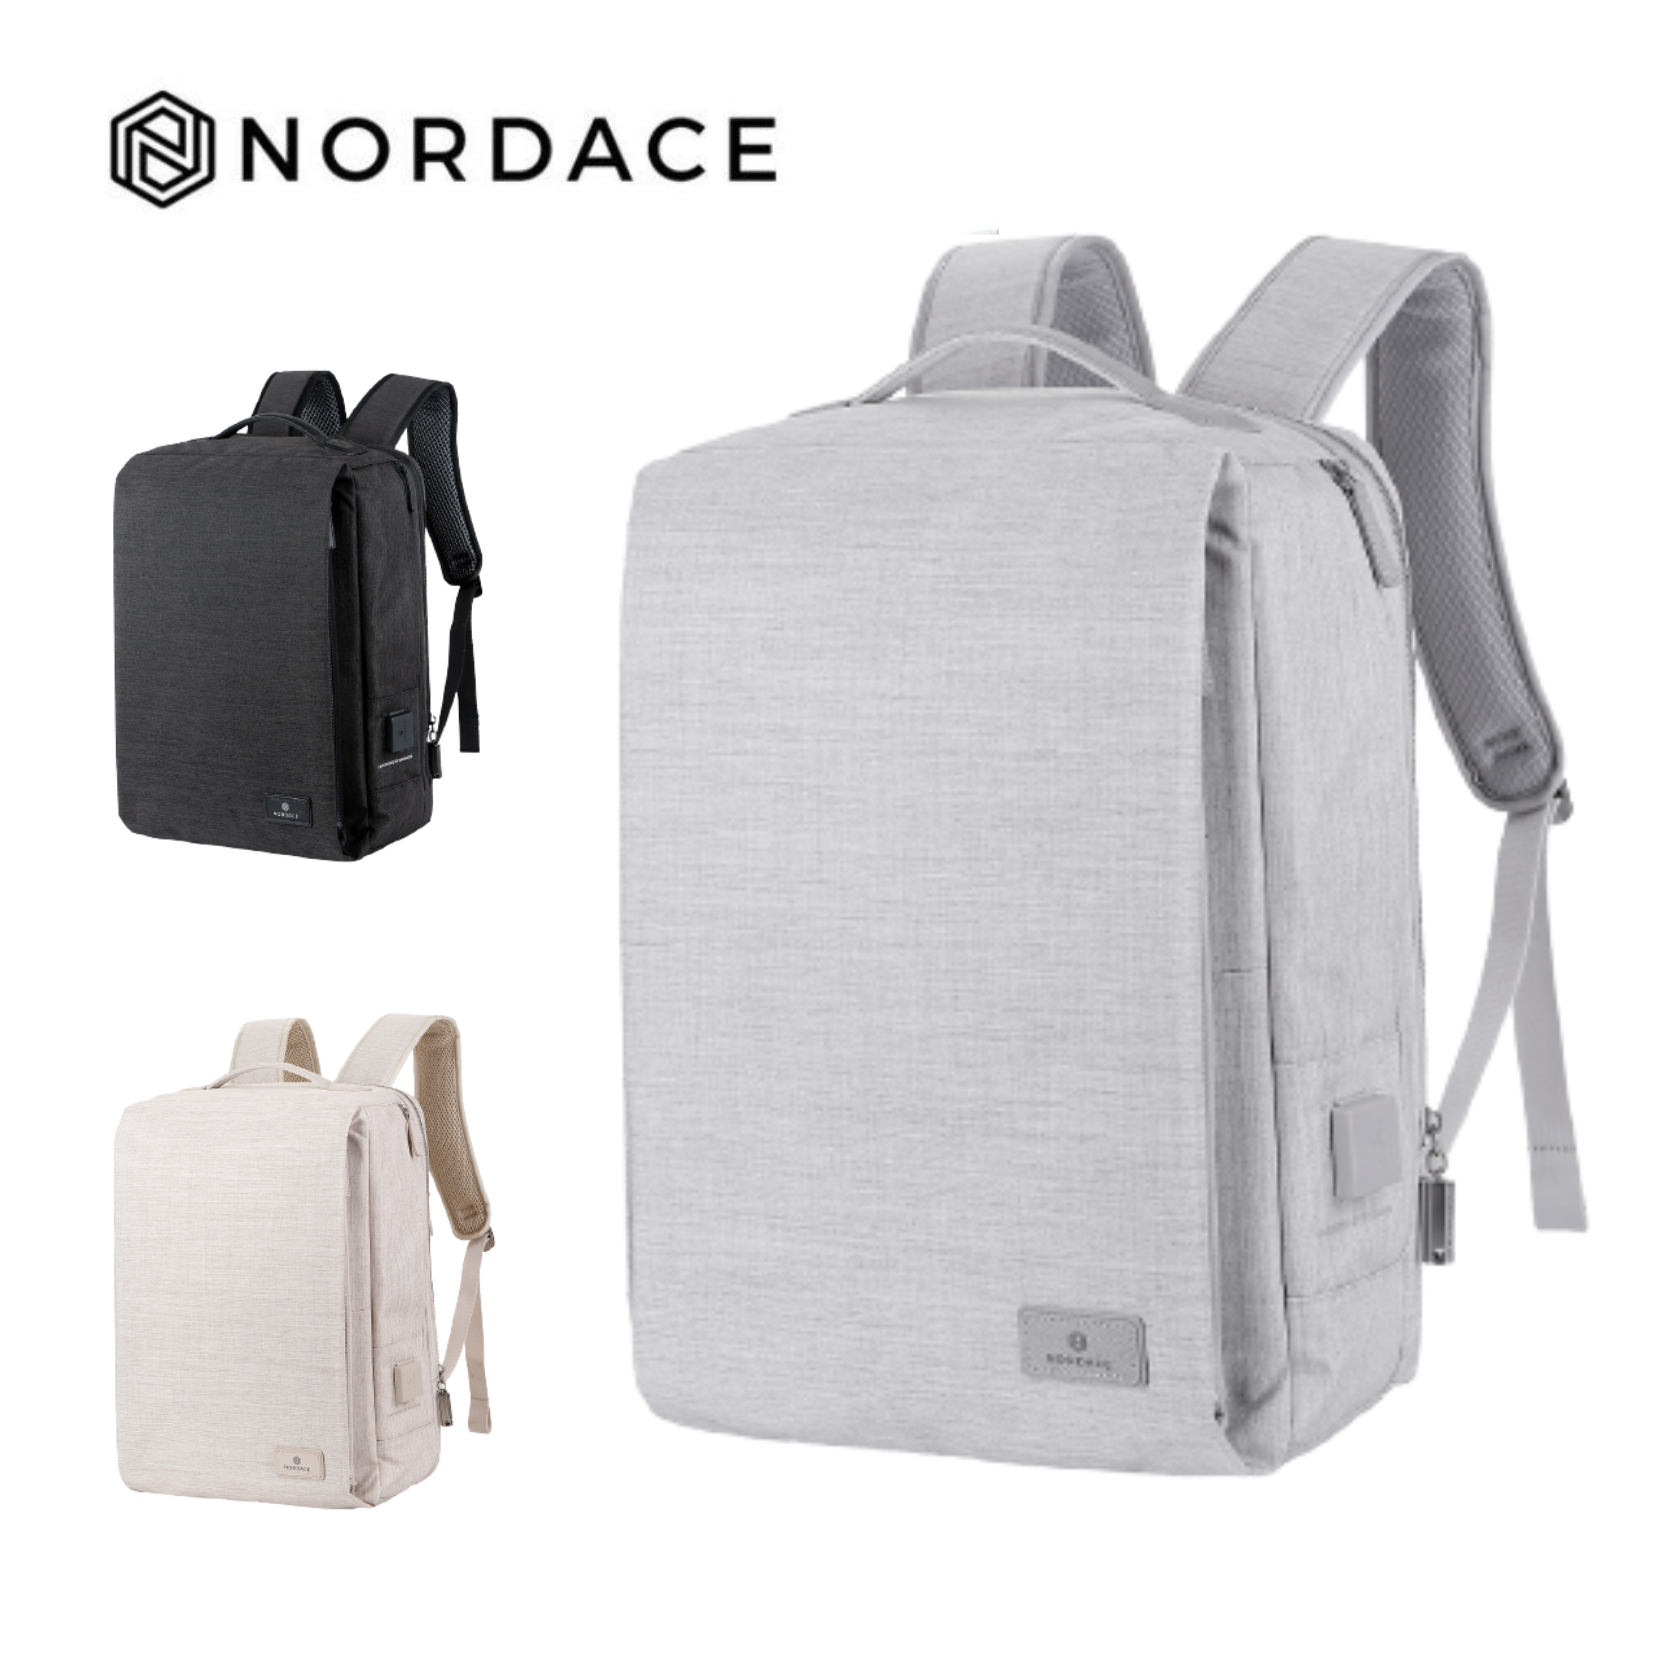 Nordace Siena II 時尚智能背包 充電雙肩包 充電背包 筆電包 電腦包 旅行包 休閒包 防水背包 後背包 雙肩包 3色可選-灰色